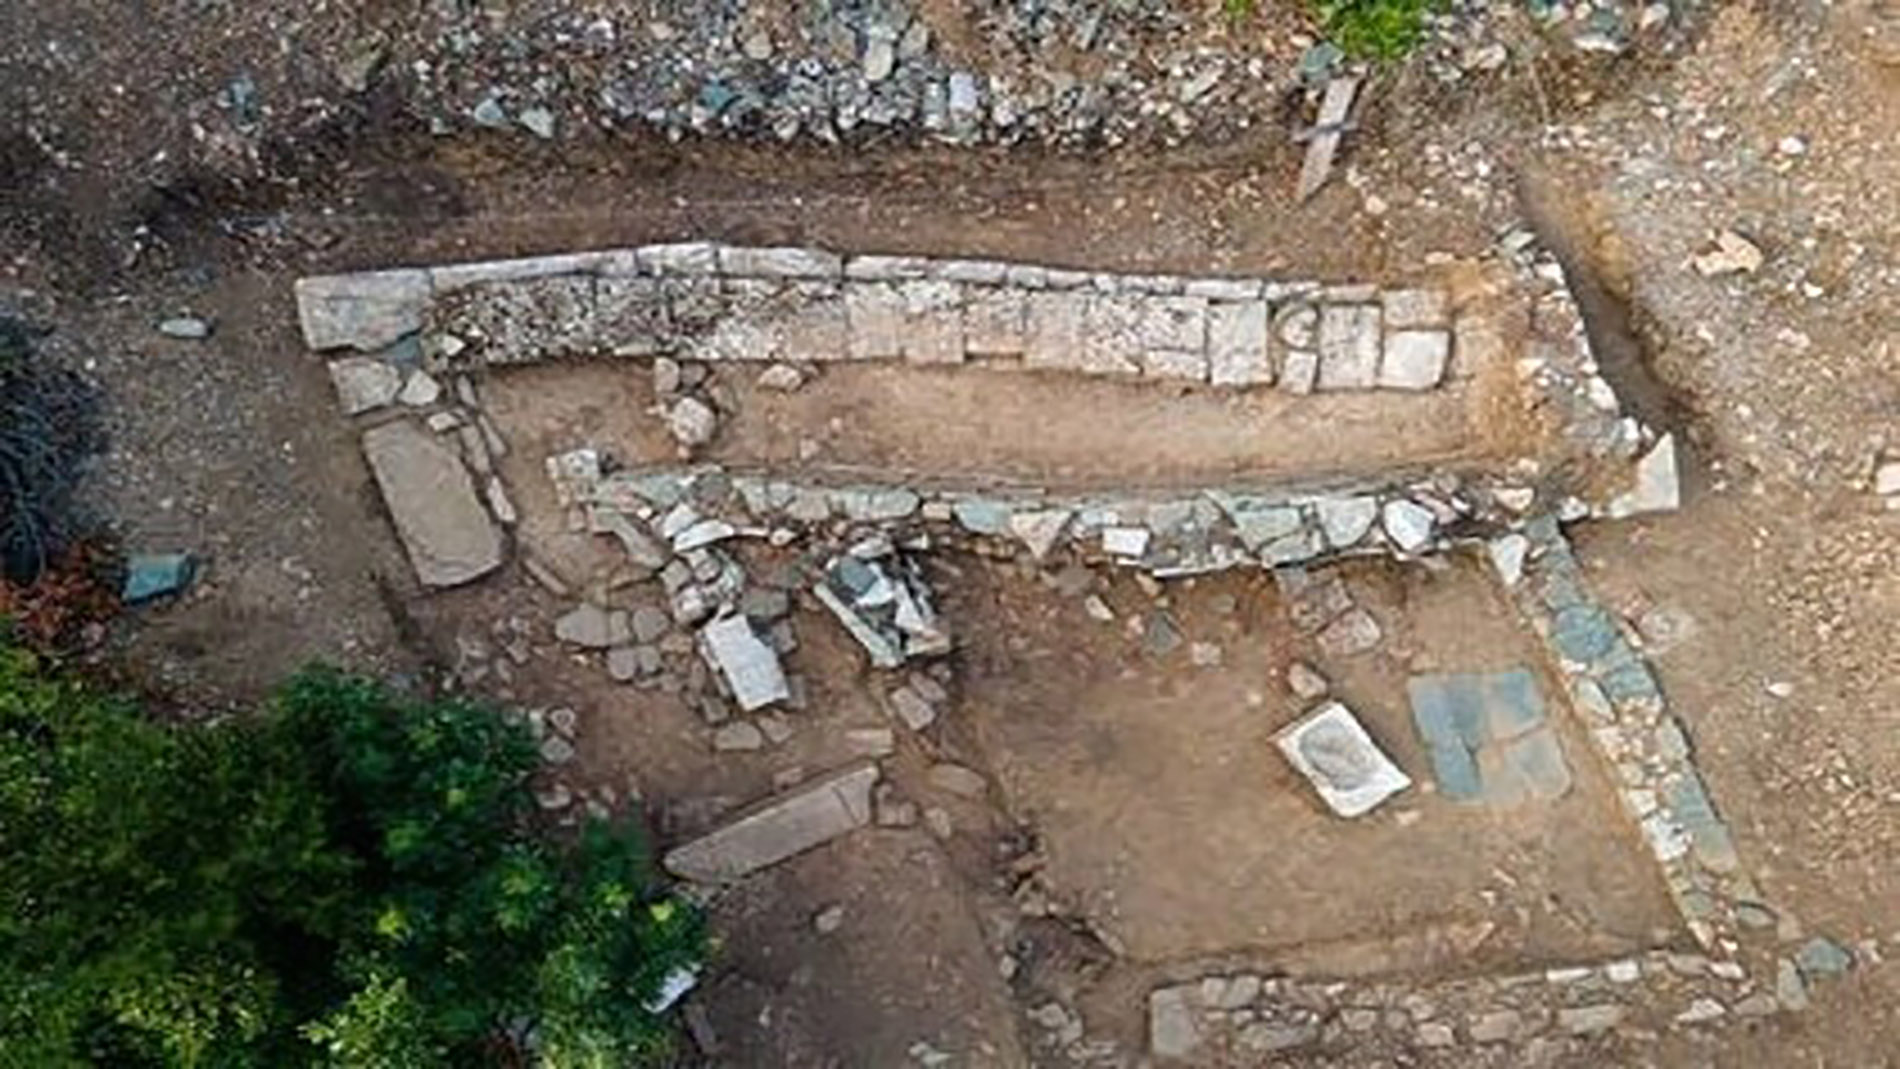 اليونان..اكتشاف أنقاض مدينة قديمة ذكرها هوميروس في الإلياذة